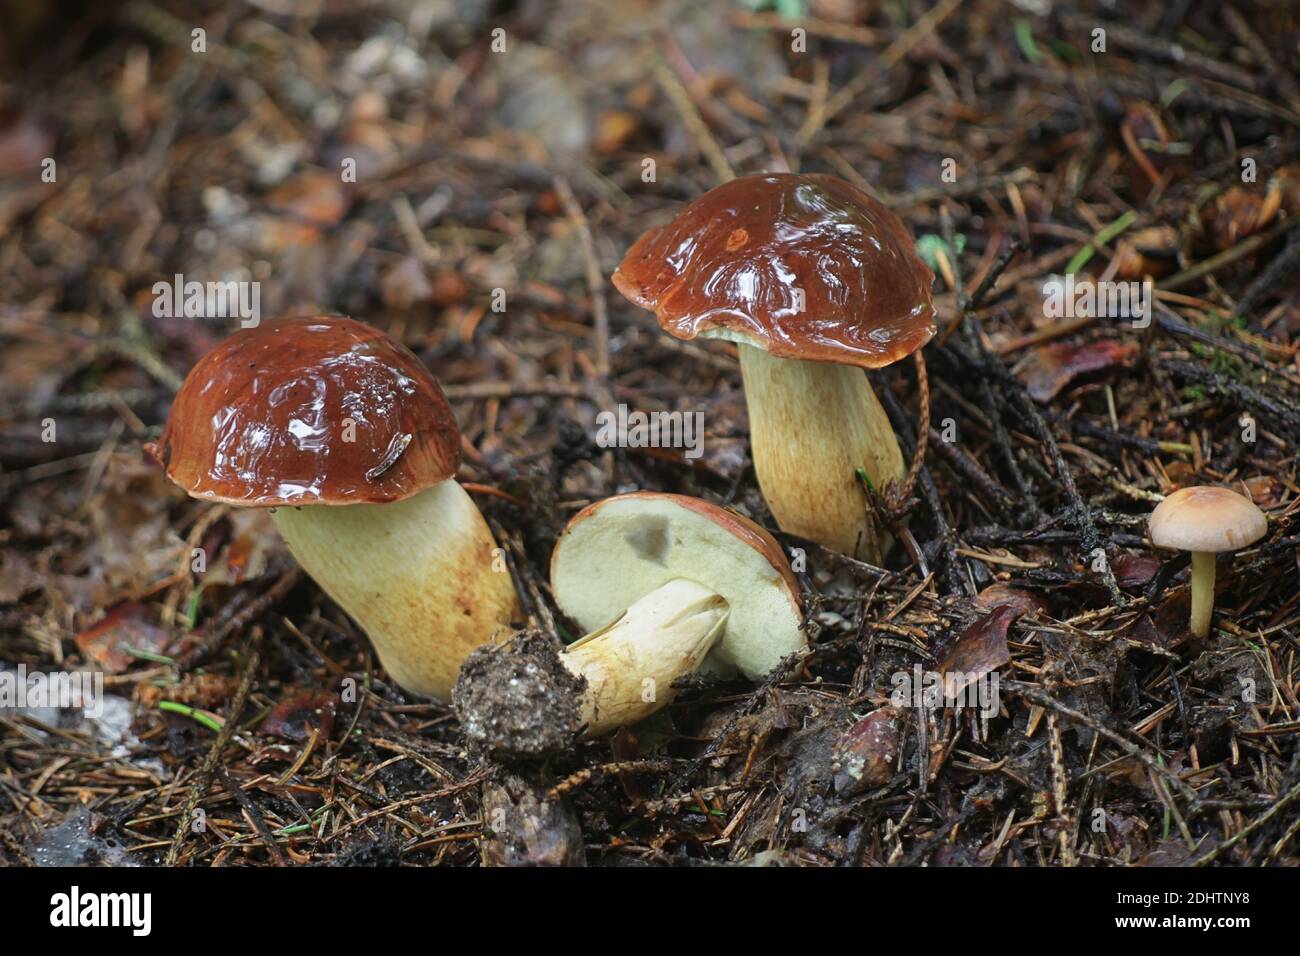 Imleria badia, known as the bay bolete, wild mushroom from Finland Stock Photo